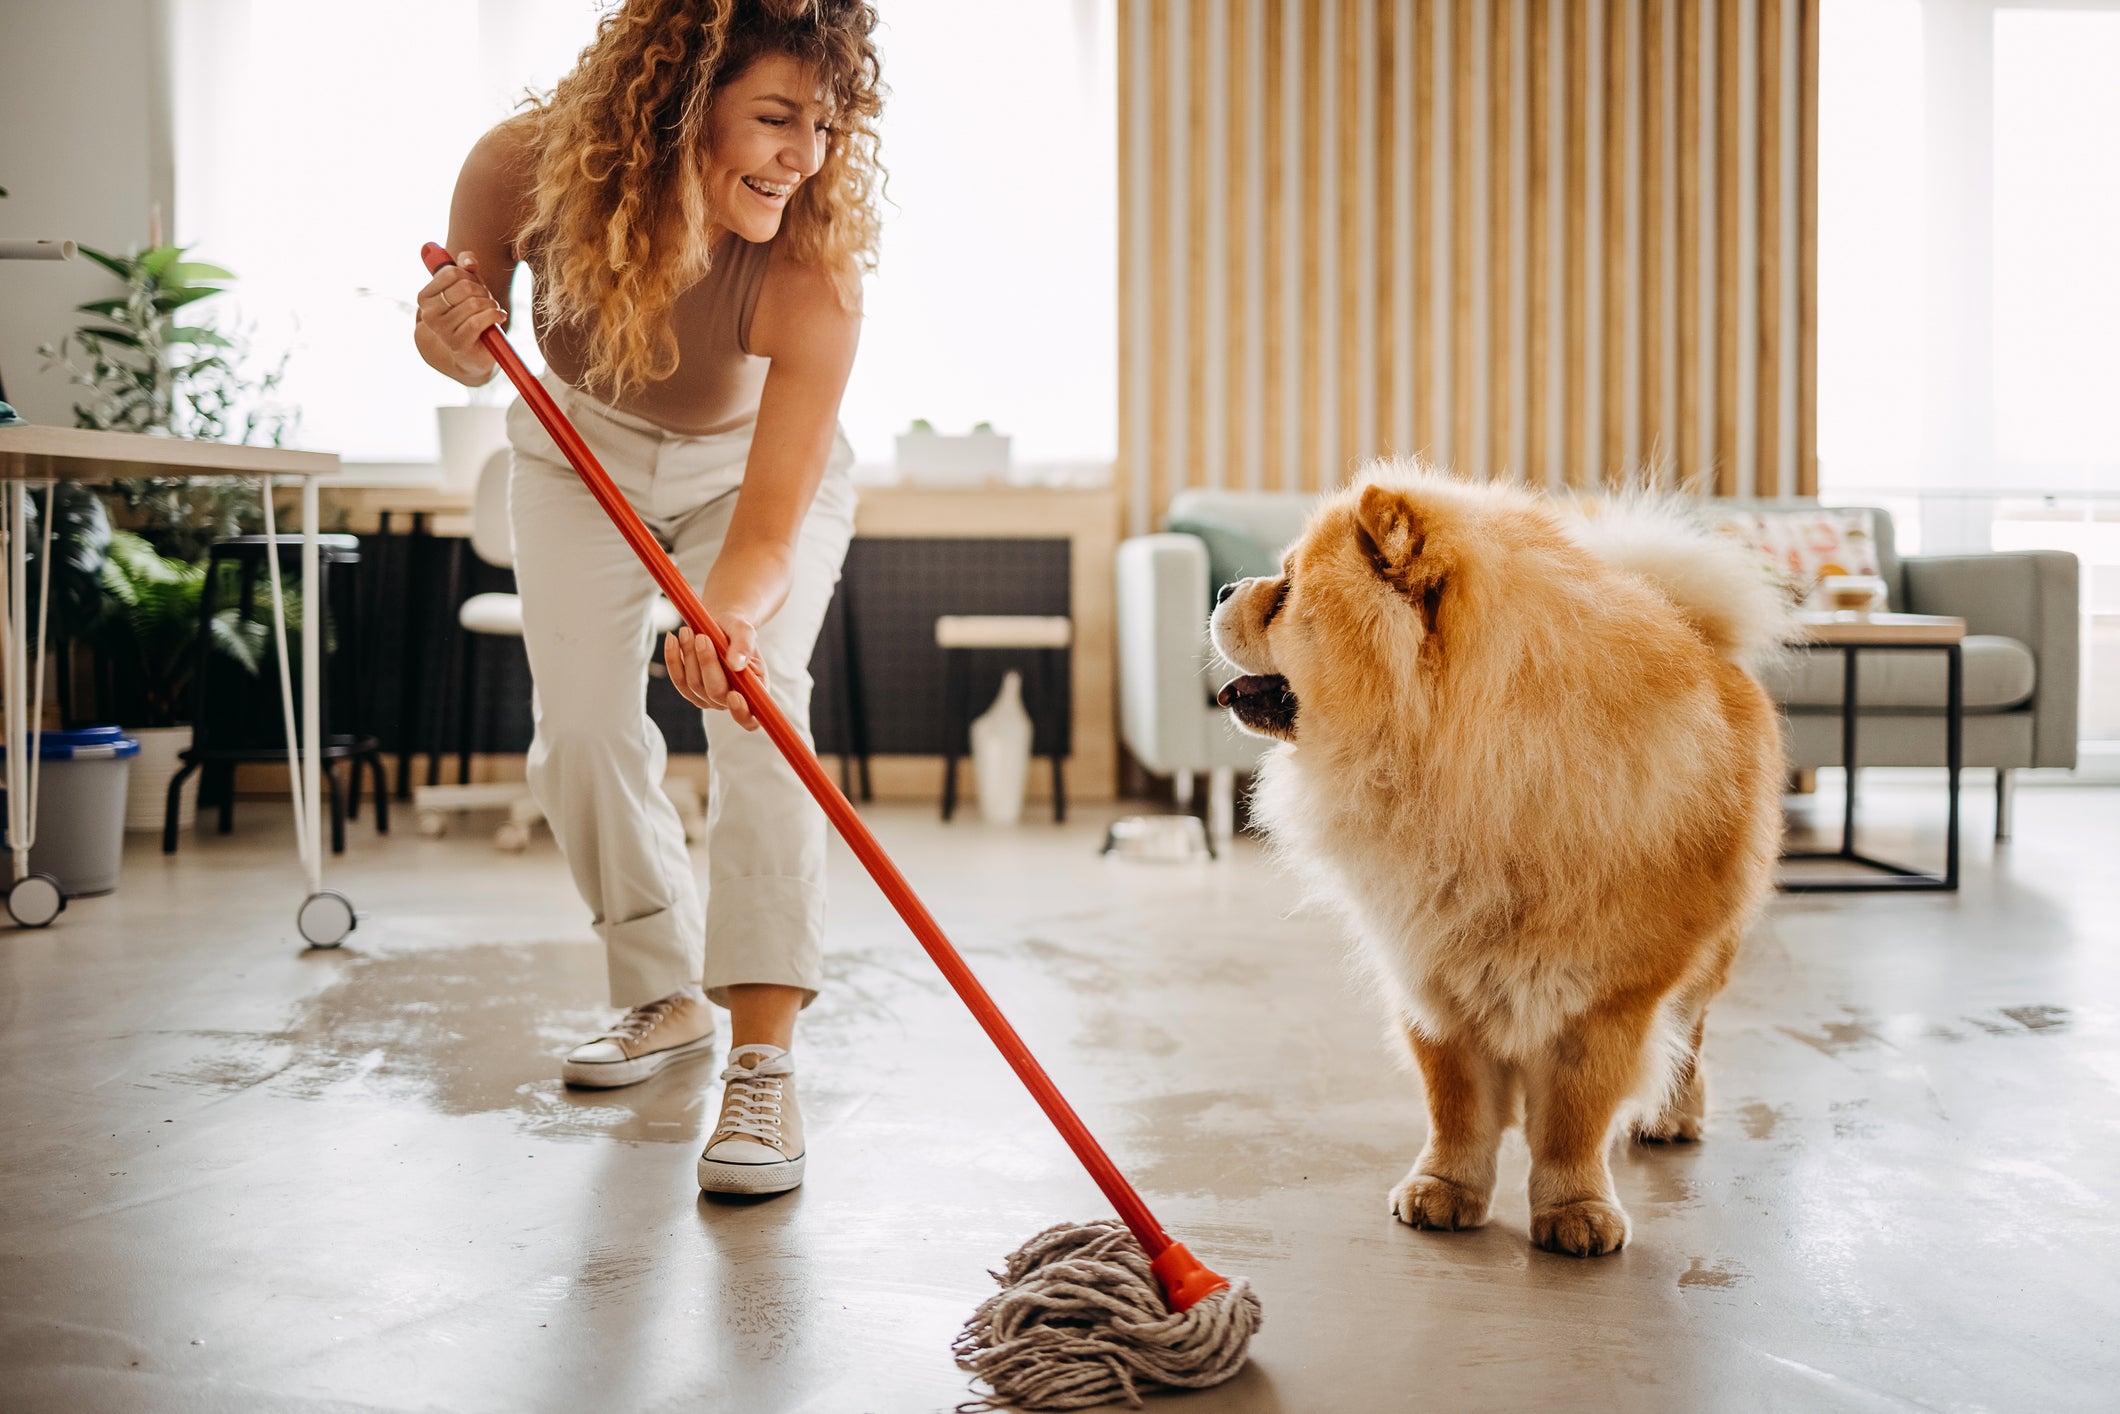 Tutora limpando chão de casa ao lado do seu cachorro Chow Chow